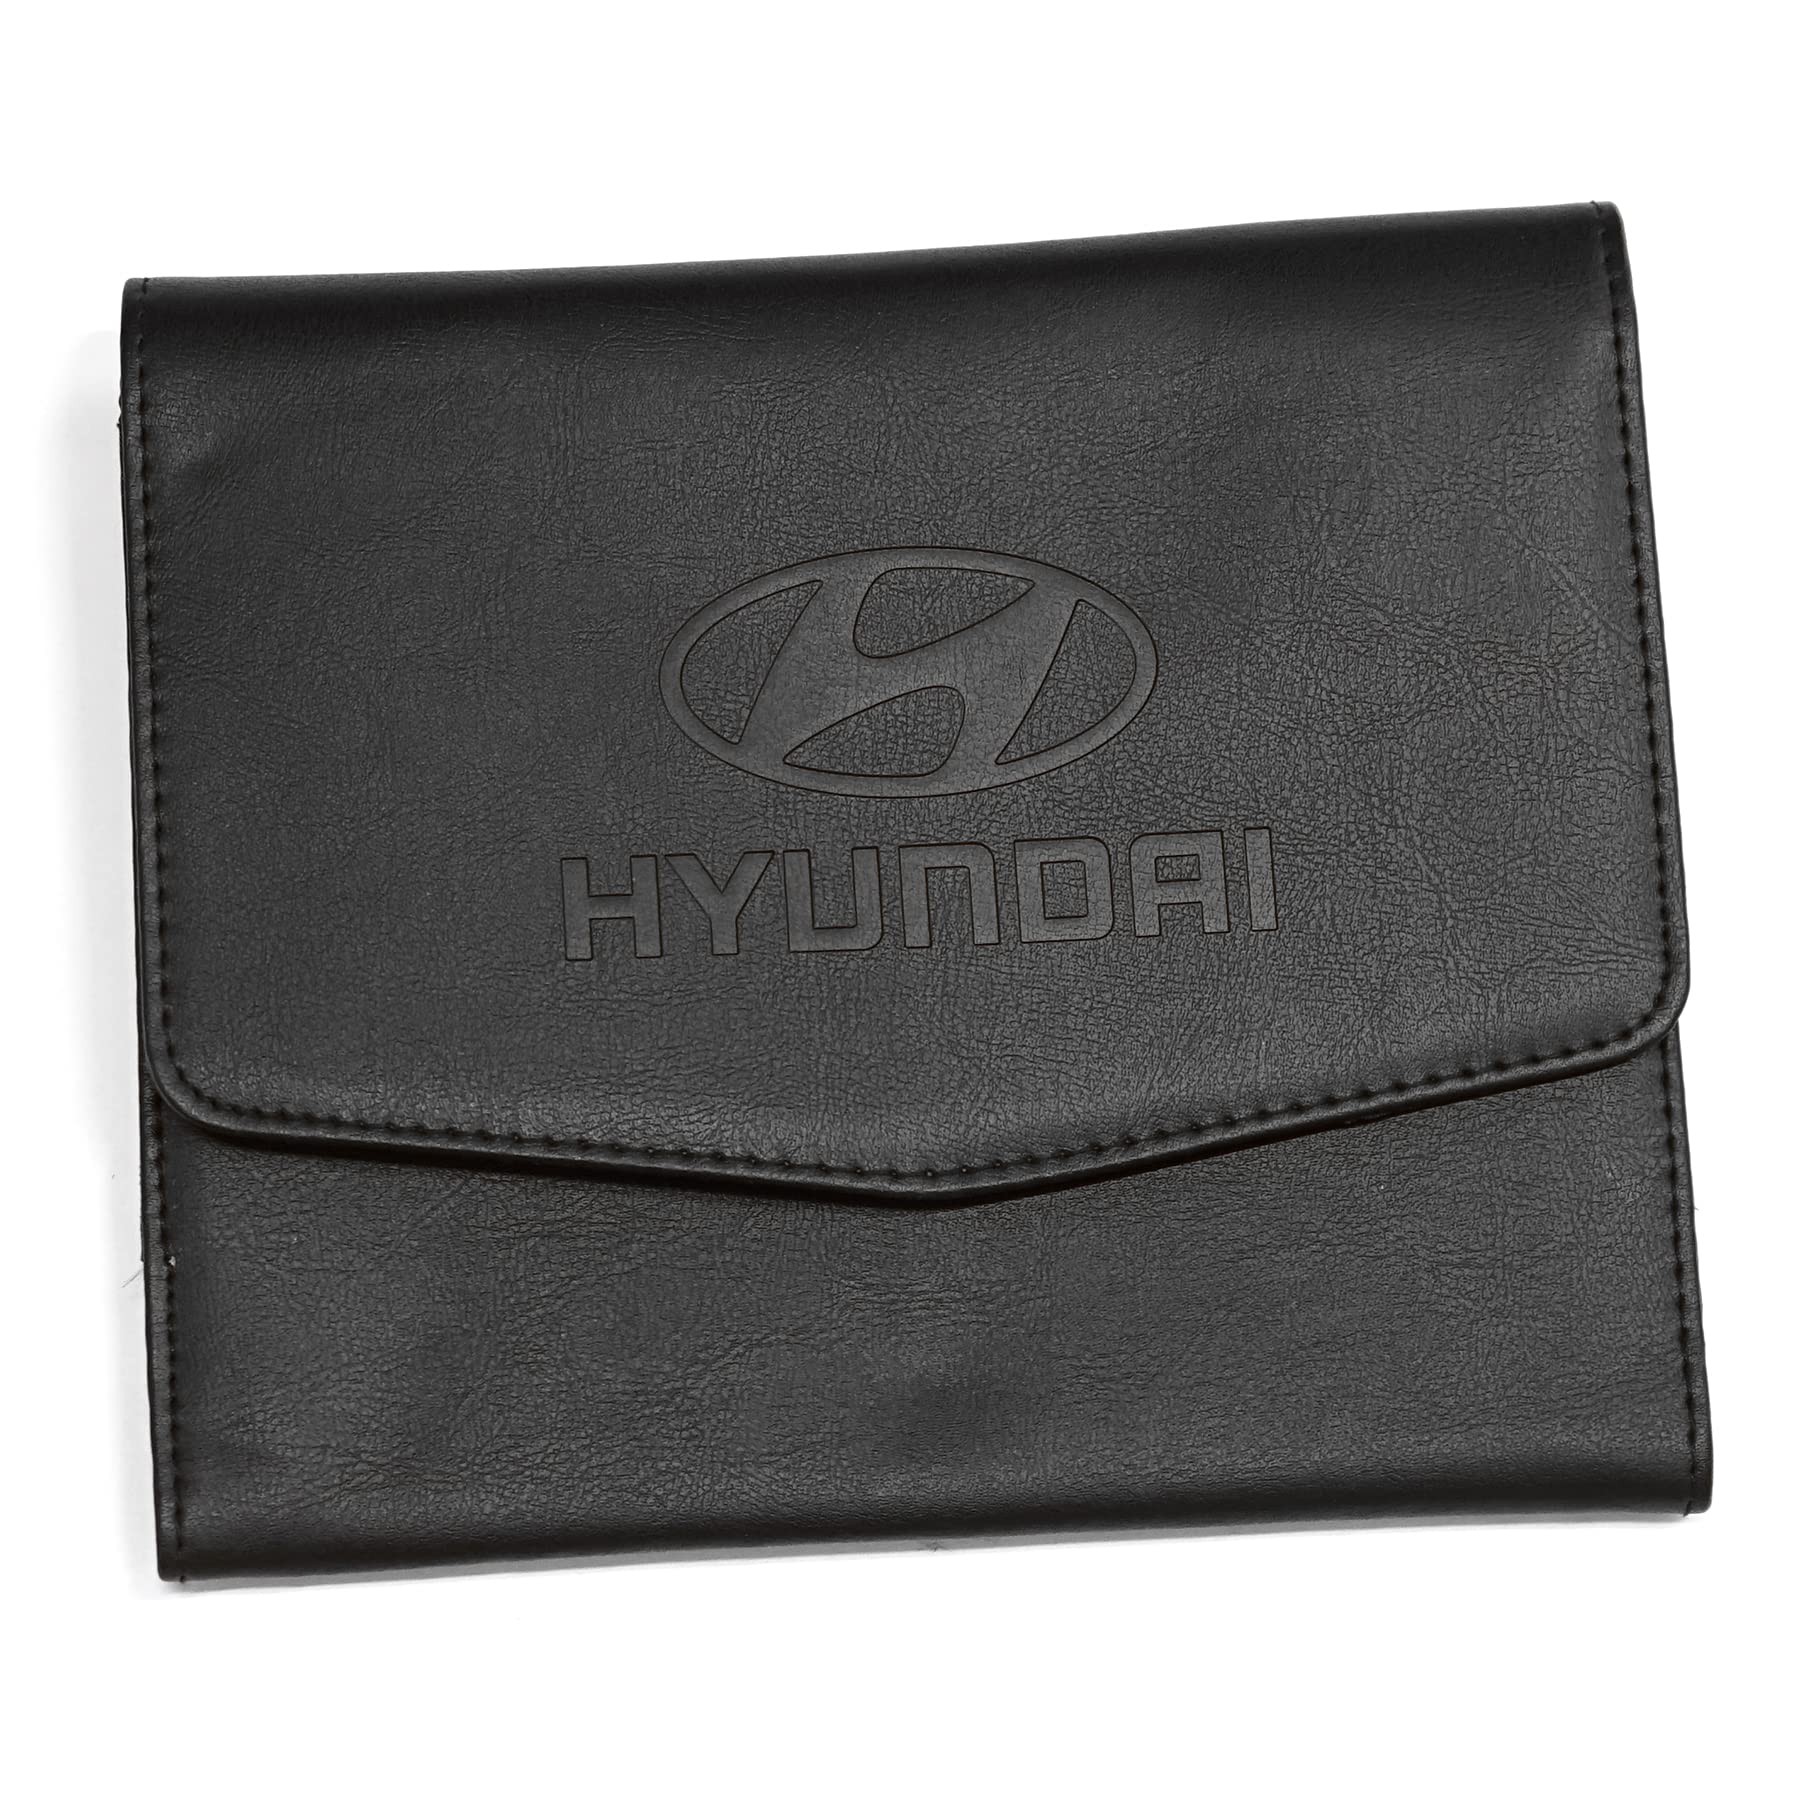 Hyundai DZ99951ADD00 Bordmappe Tasche Hülle Case, schwarz, mit Markenlogo von Hyundai